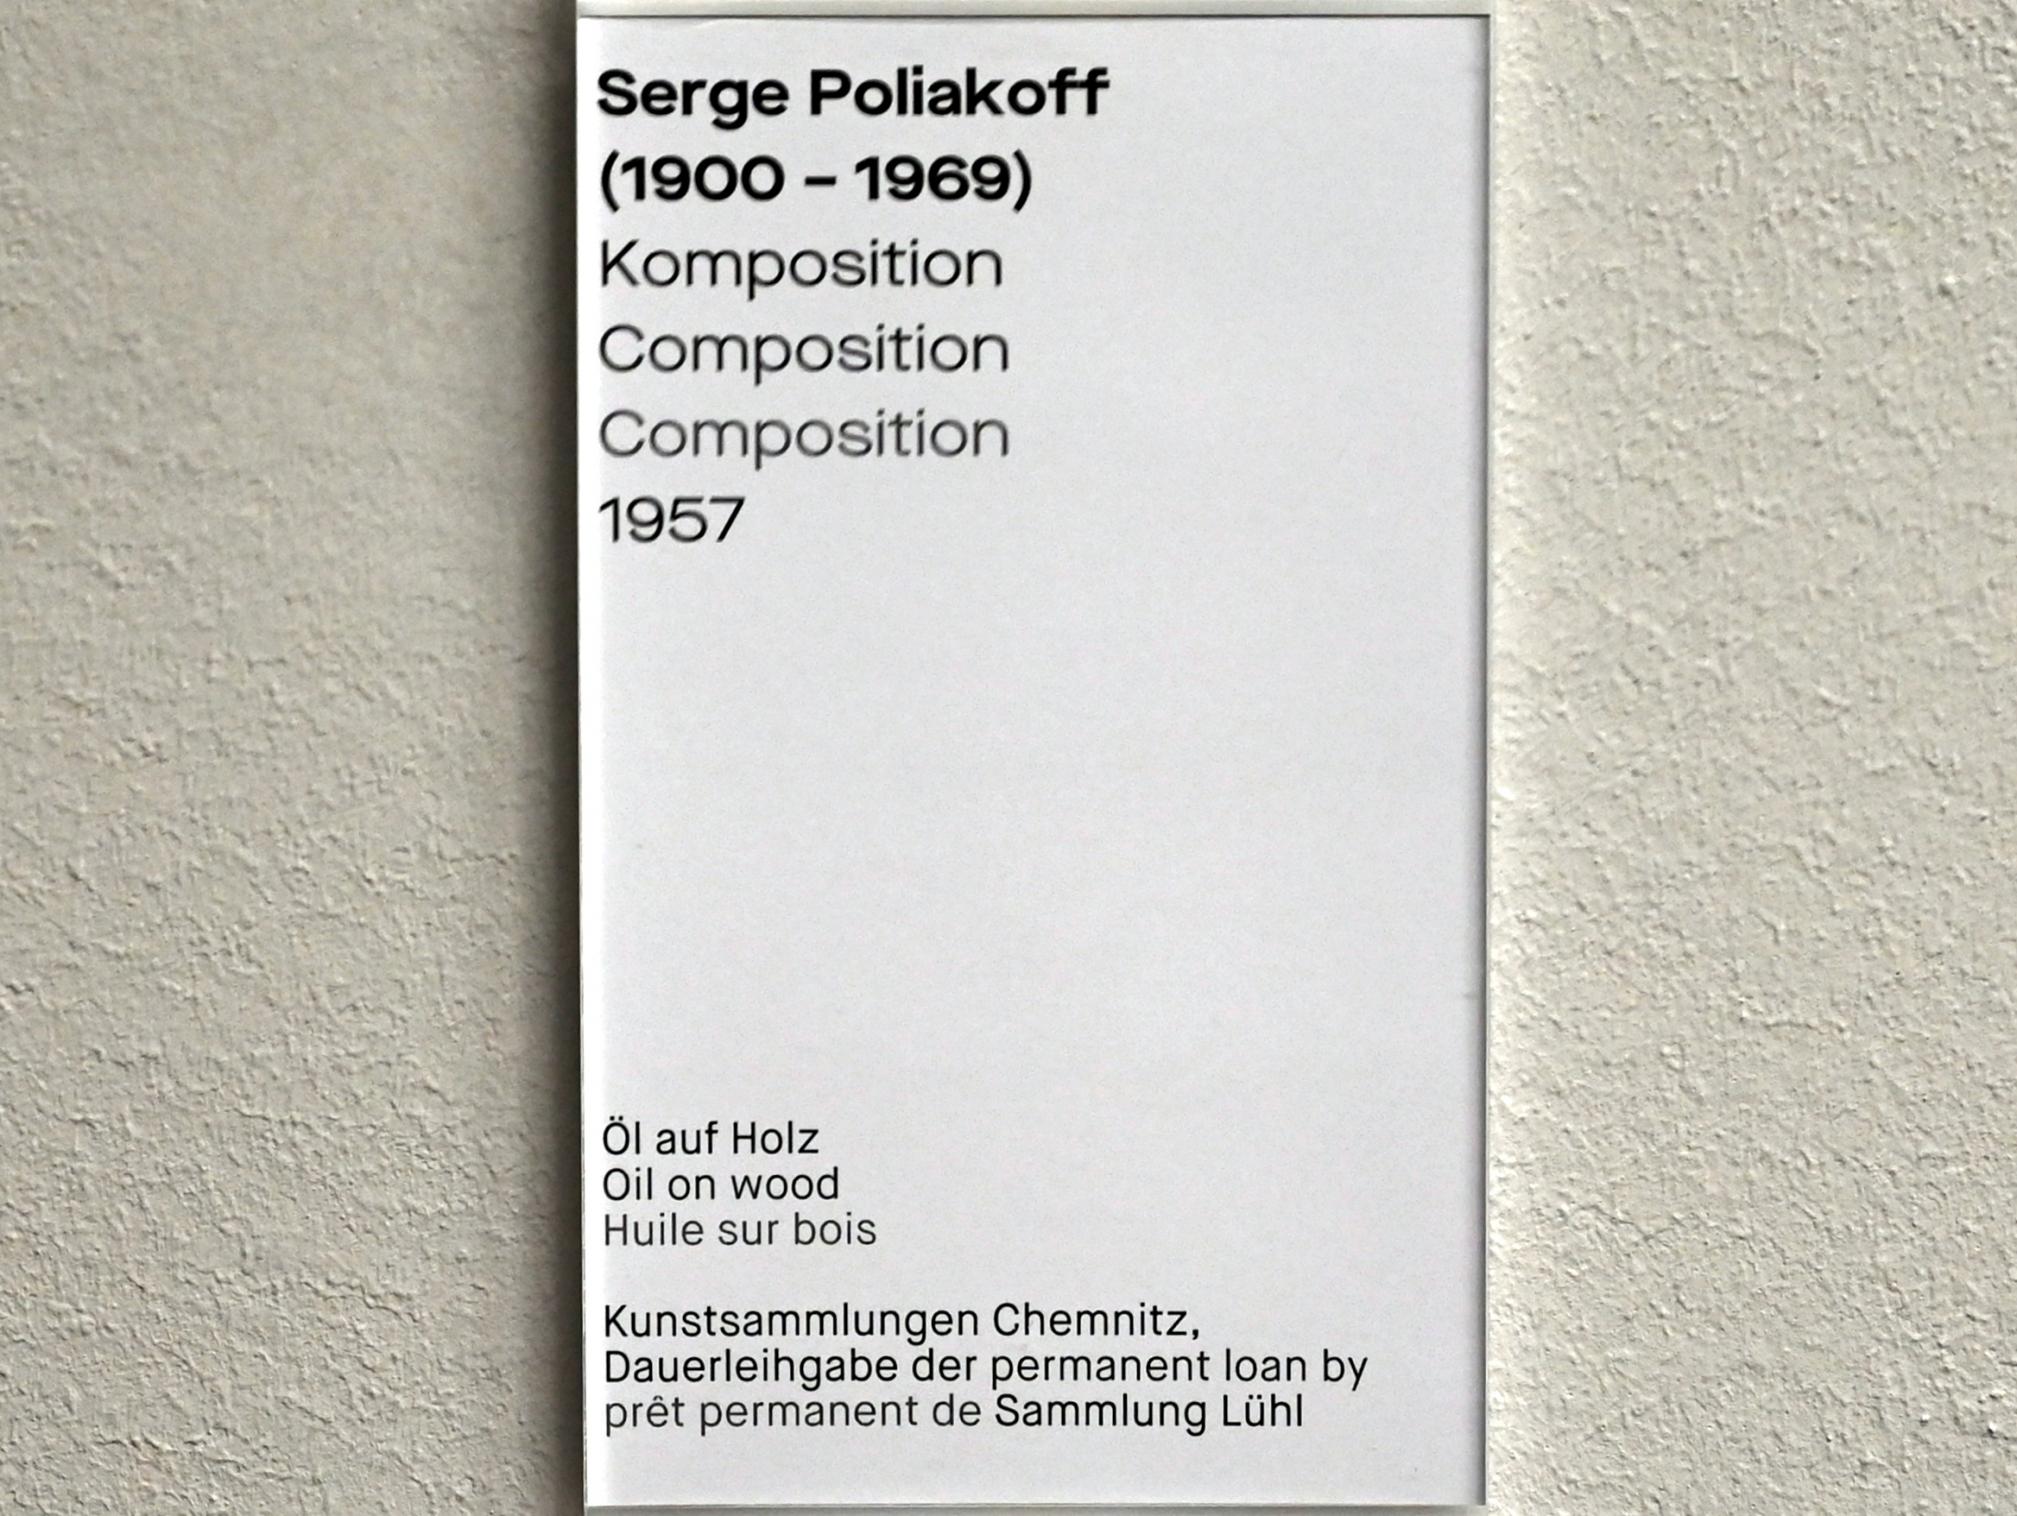 Serge Poliakoff (1936–1968), Komposition, Chemnitz, Museum Gunzenhauser, Saal 2.6 - Serge Poliakoff, 1957, Bild 2/2